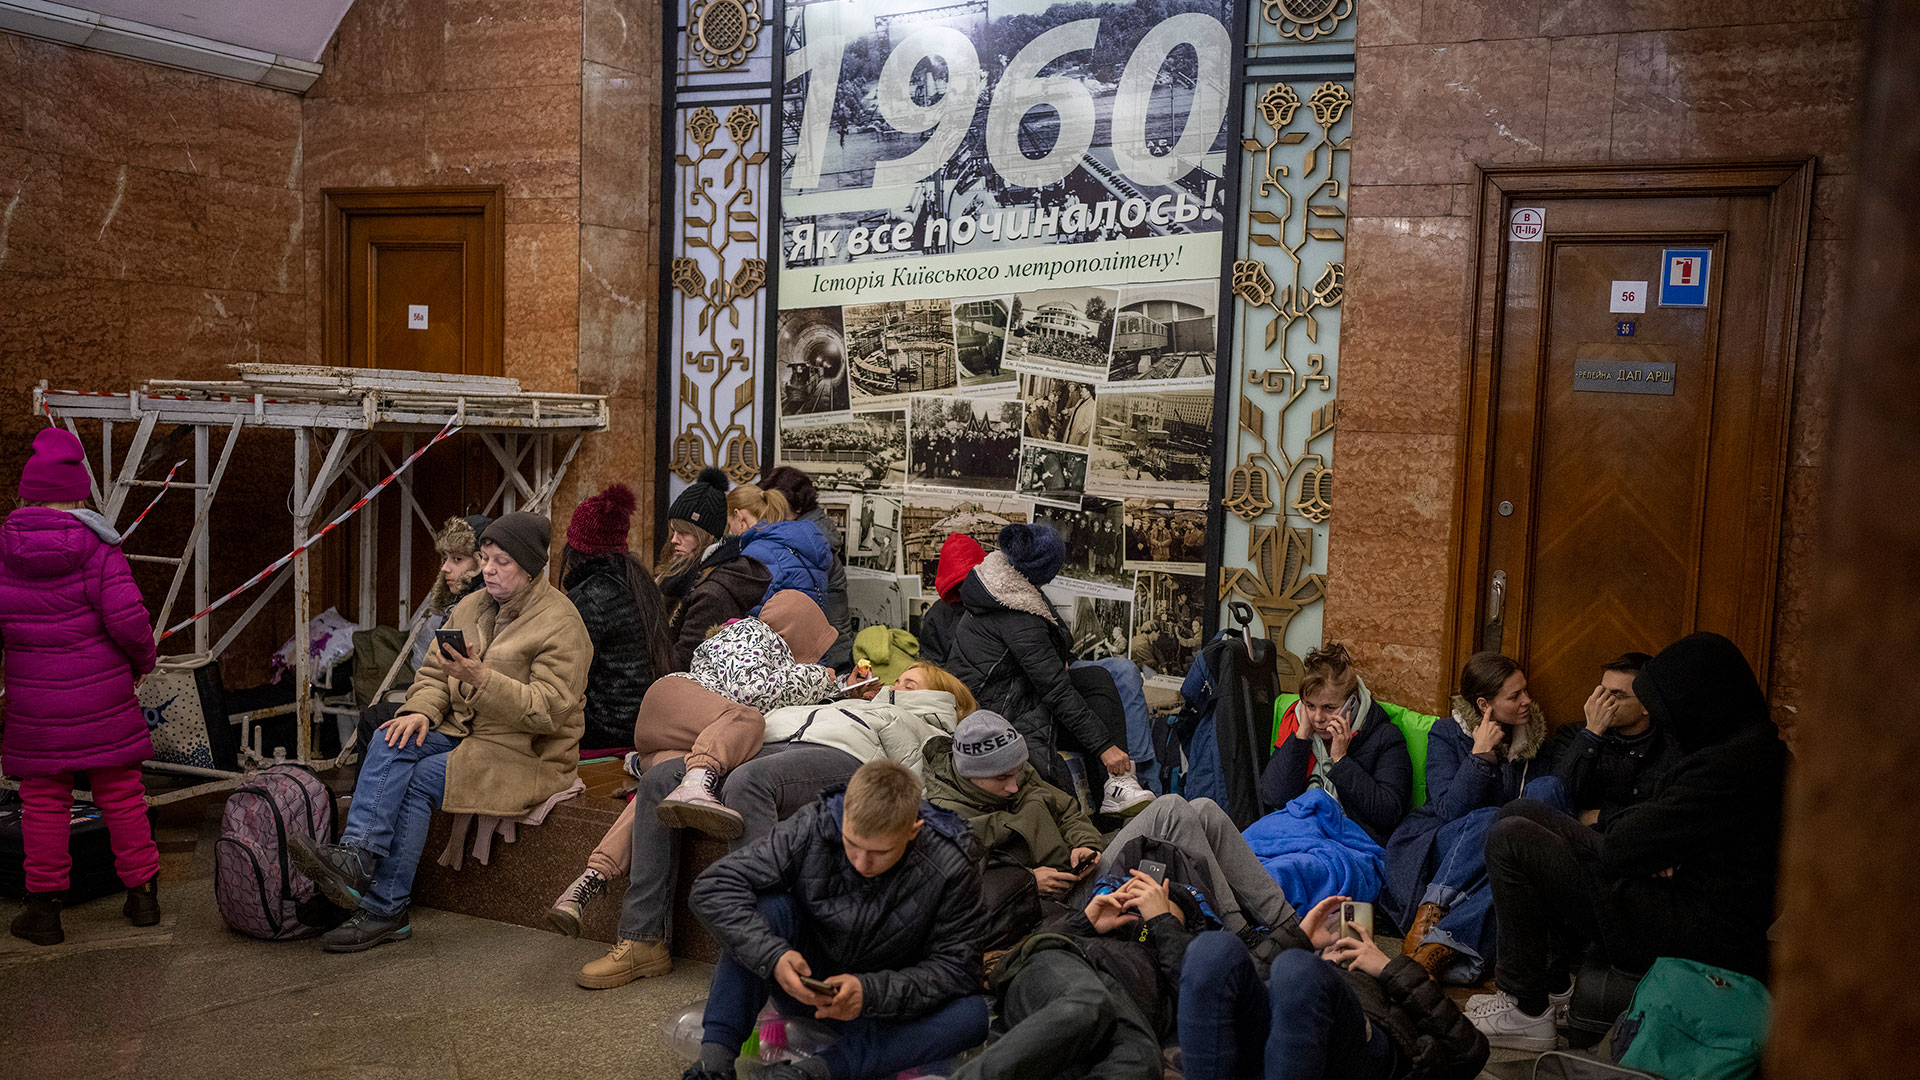 La gente descansa en el metro de Kiev, usándolo como refugio antibombas, el jueves 24 de febrero de 2022, en Kiev, Ucrania. (AP Foto/Emilio Morenatti)